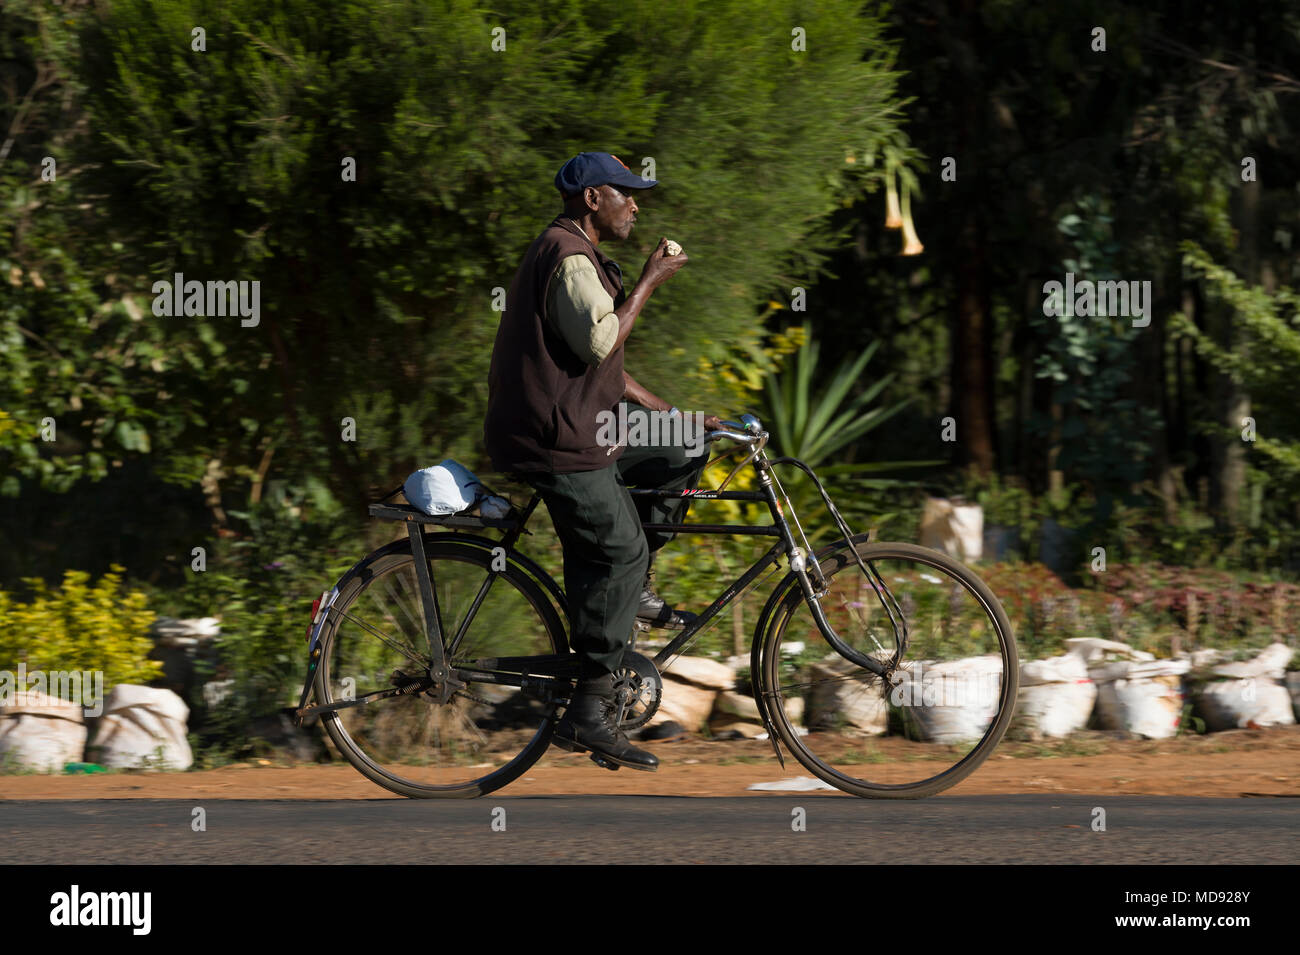 Ein Radfahrer fährt ein traditioneller Roadster-Stil Fahrrad, allgemein  eine "Black Mamba" im Osten Afrikas bezeichnet. Obwohl sie noch ein  alltäglicher Anblick, sie Stockfotografie - Alamy